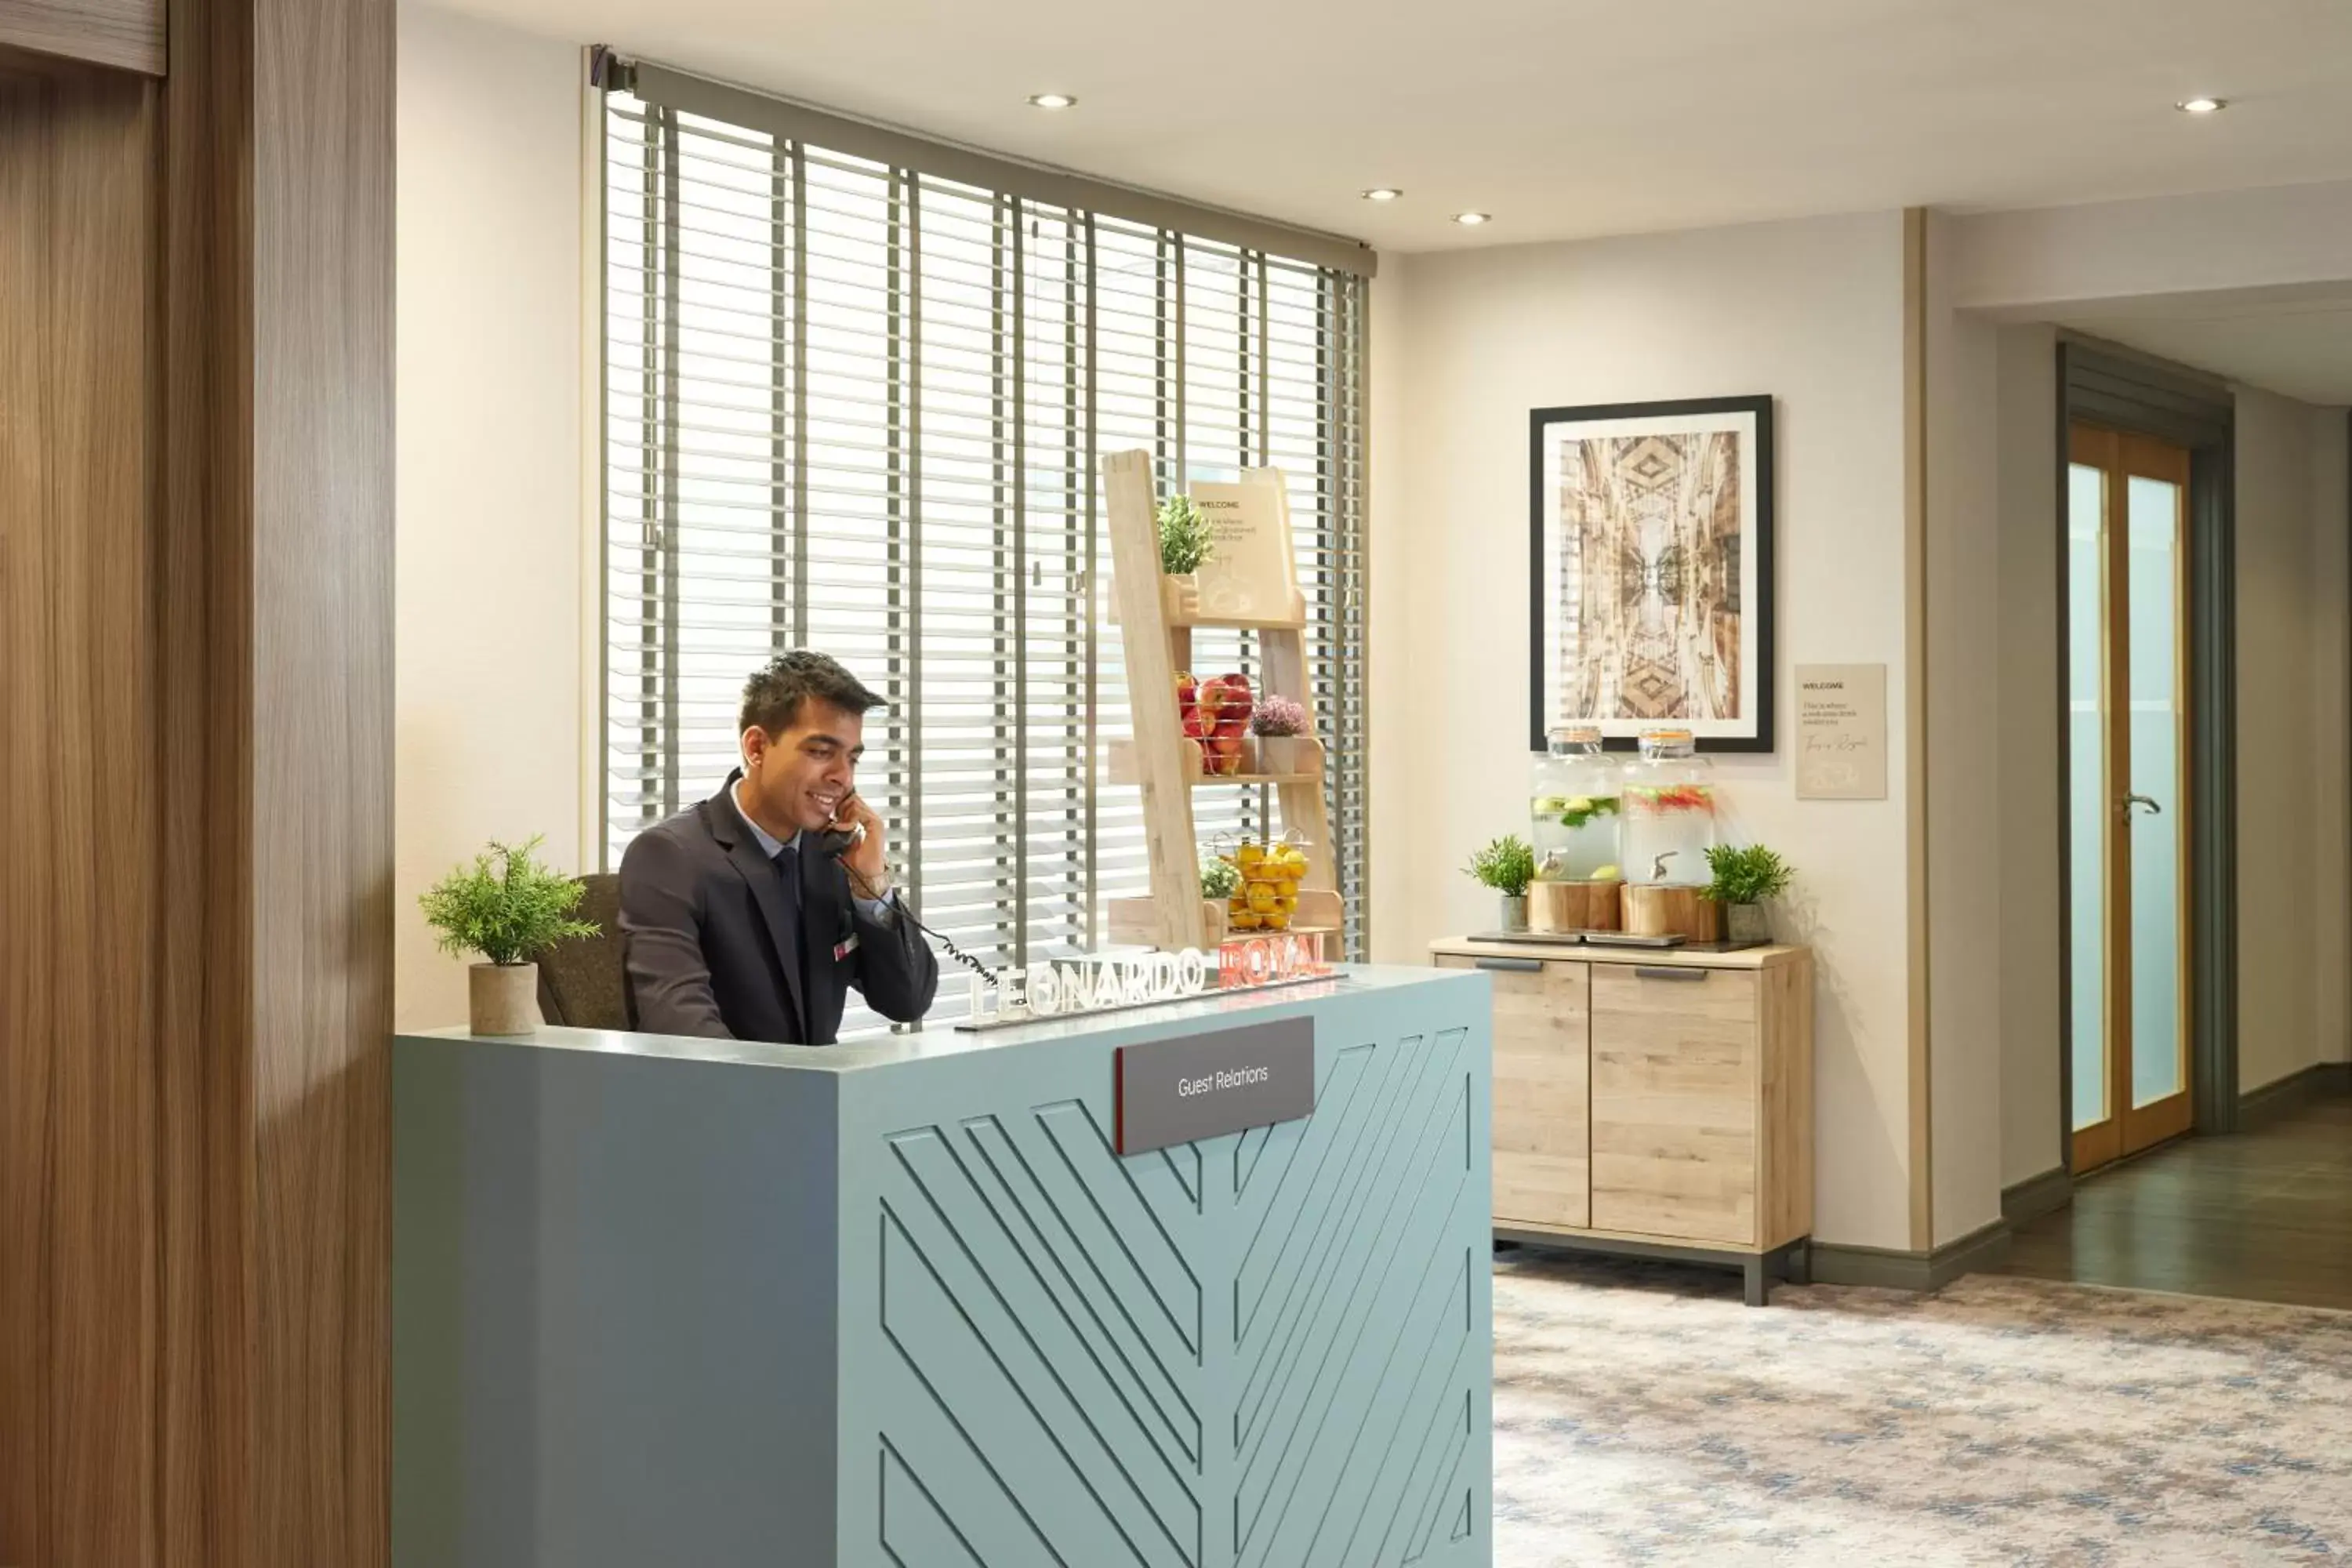 Lobby or reception, Lobby/Reception in Leonardo Royal Hotel Oxford - Formerly Jurys Inn